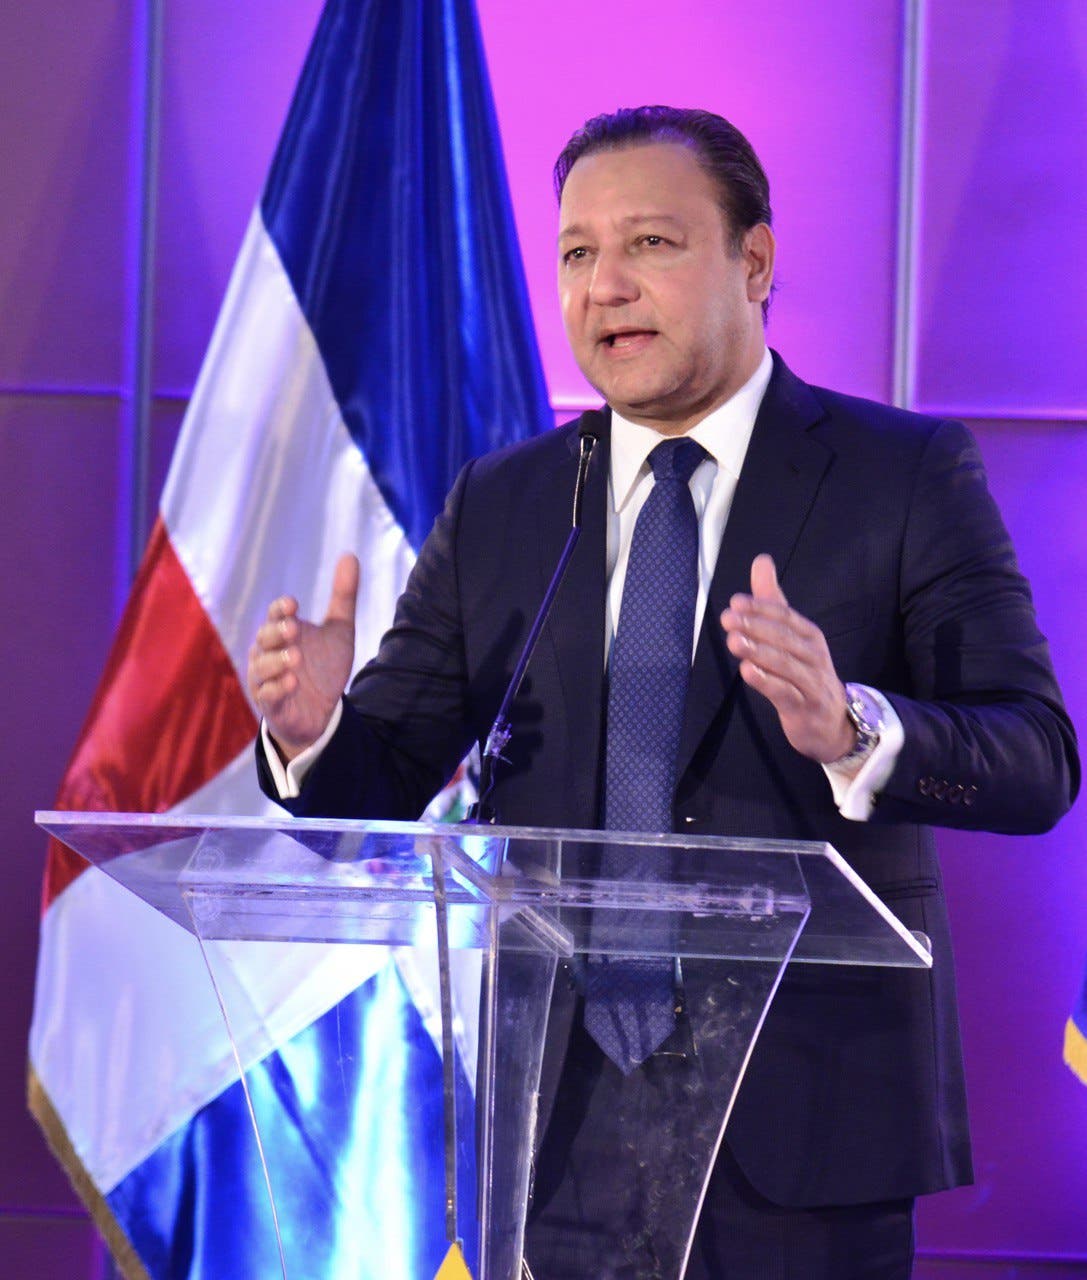 Abel Martínez: “La imbatible alianza opositora fortalece nuestra lucha a favor del pueblo dominicano”